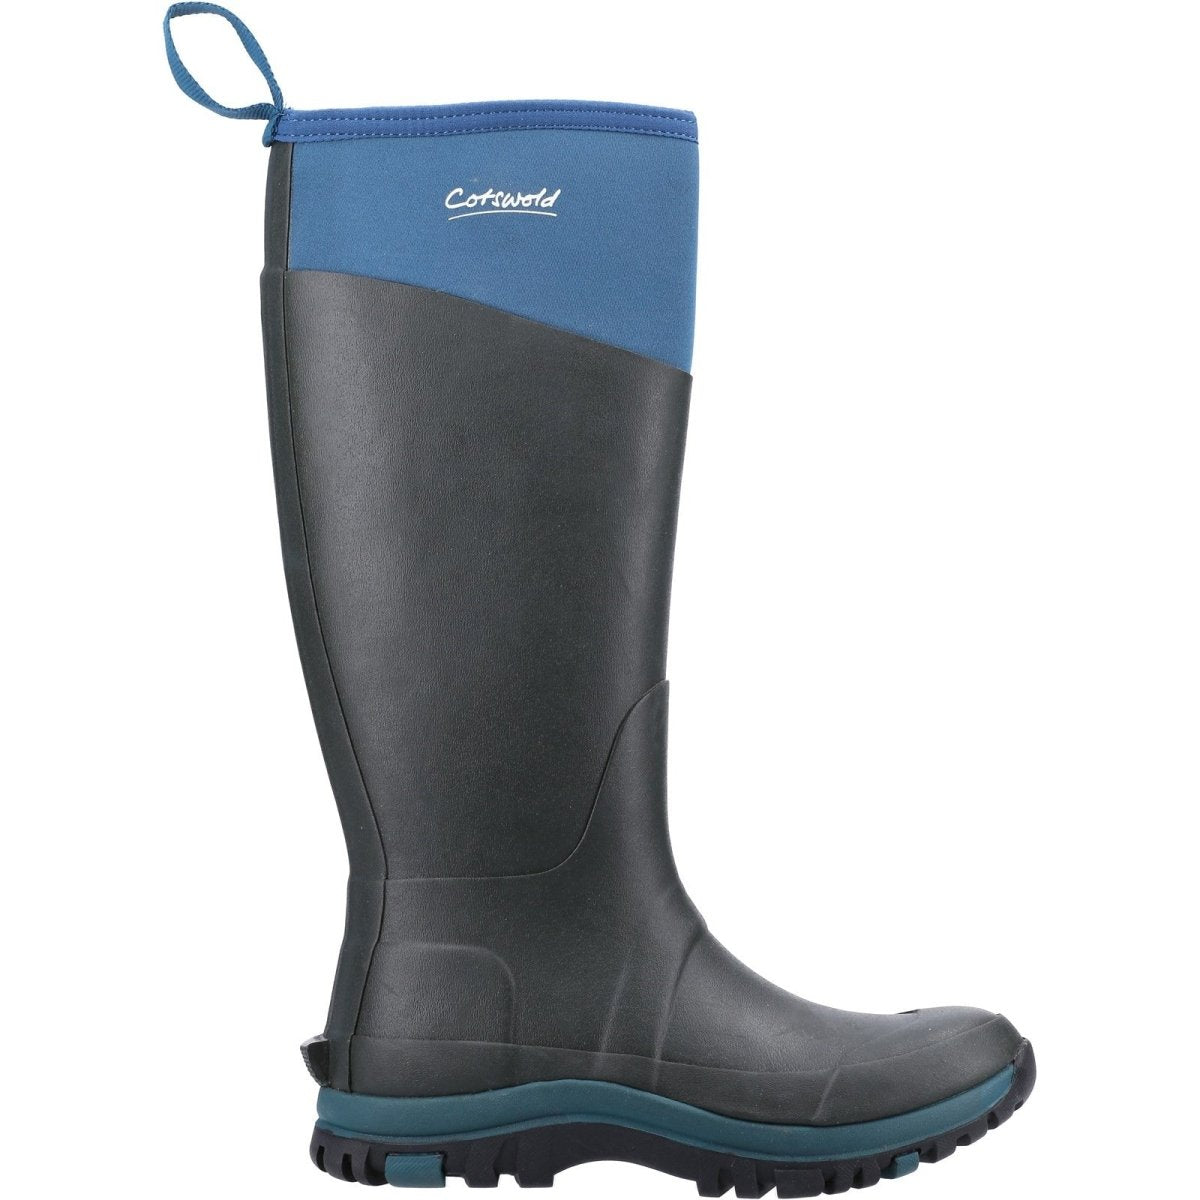 Cotswold Wenworth Waterproof Ladies Wellington Boots - Shoe Store Direct